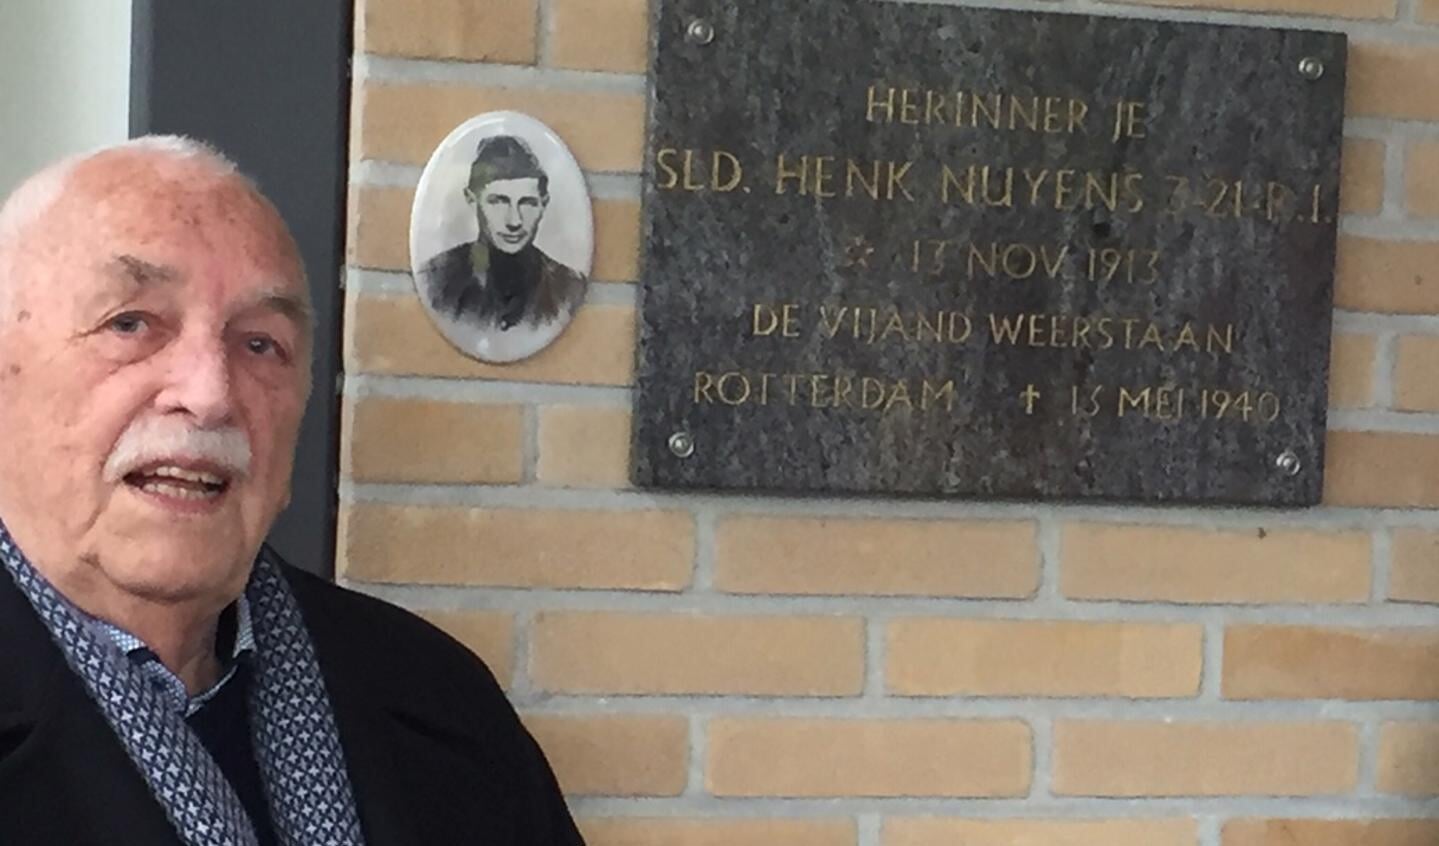 Joop van IJzendoorn onthulde op 4 mei de foto van soldaat Henk Nuijens.